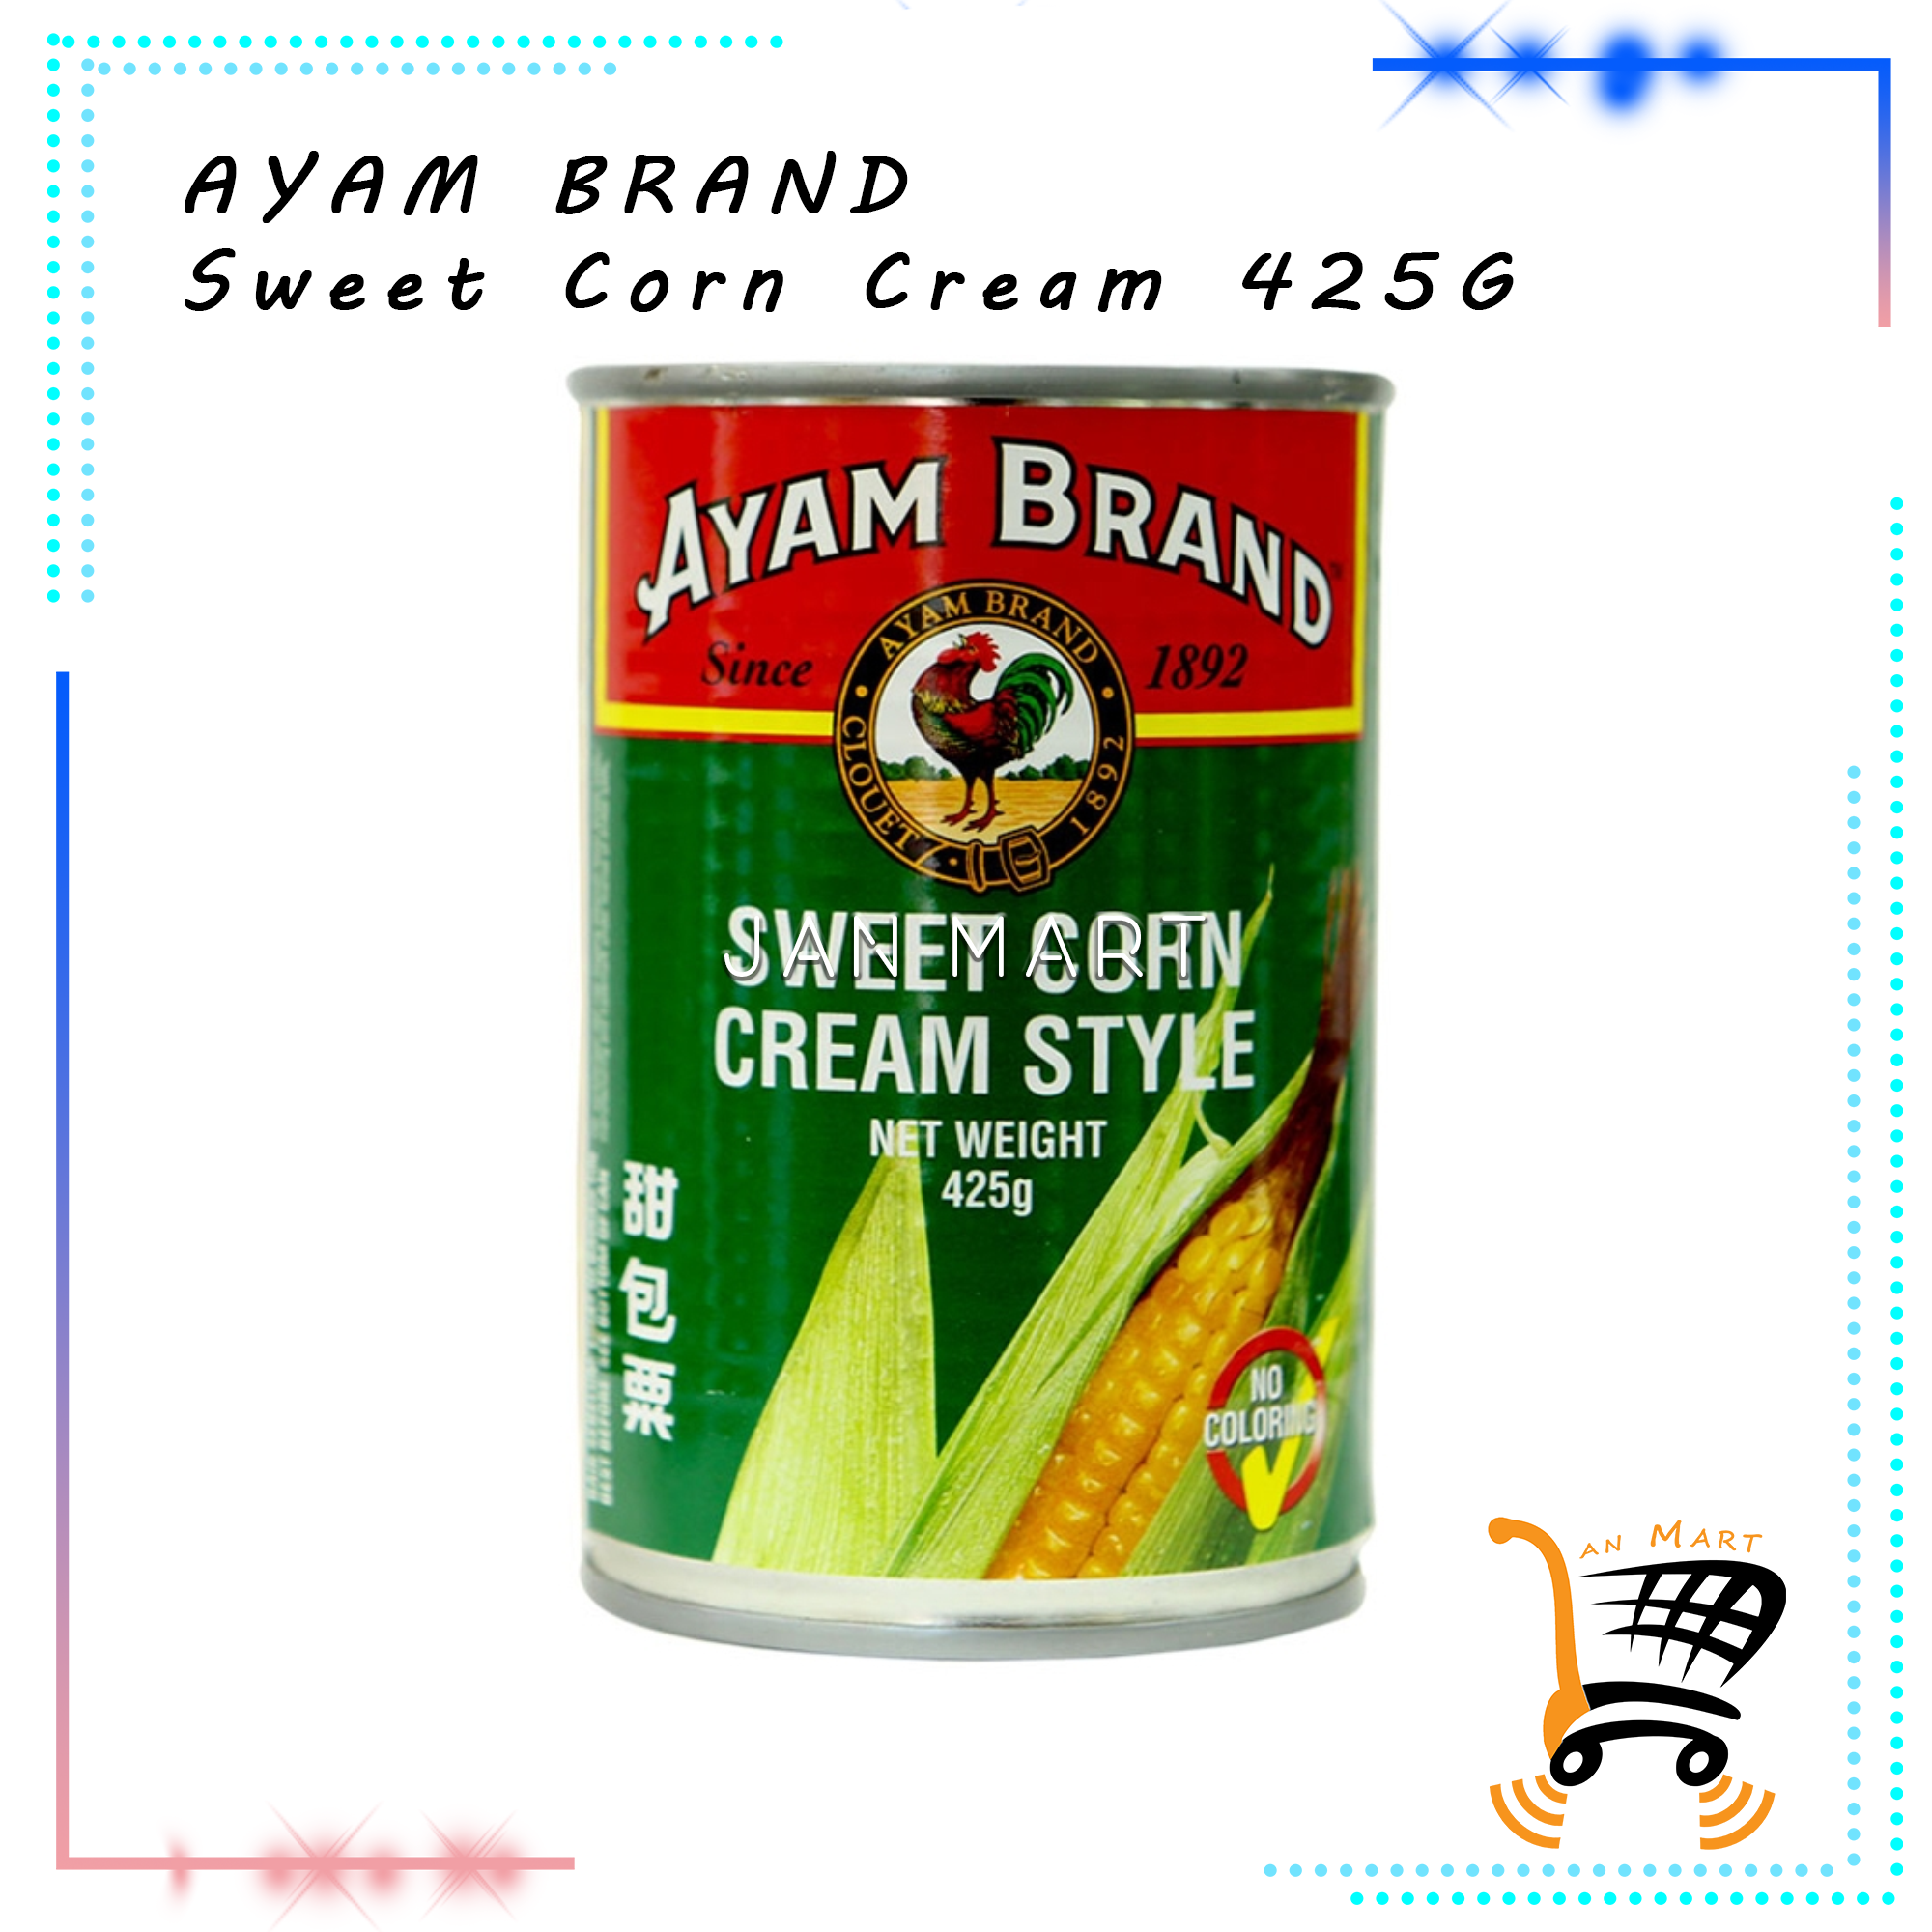 AYAM BRAND Sweet Corn Cream 425G